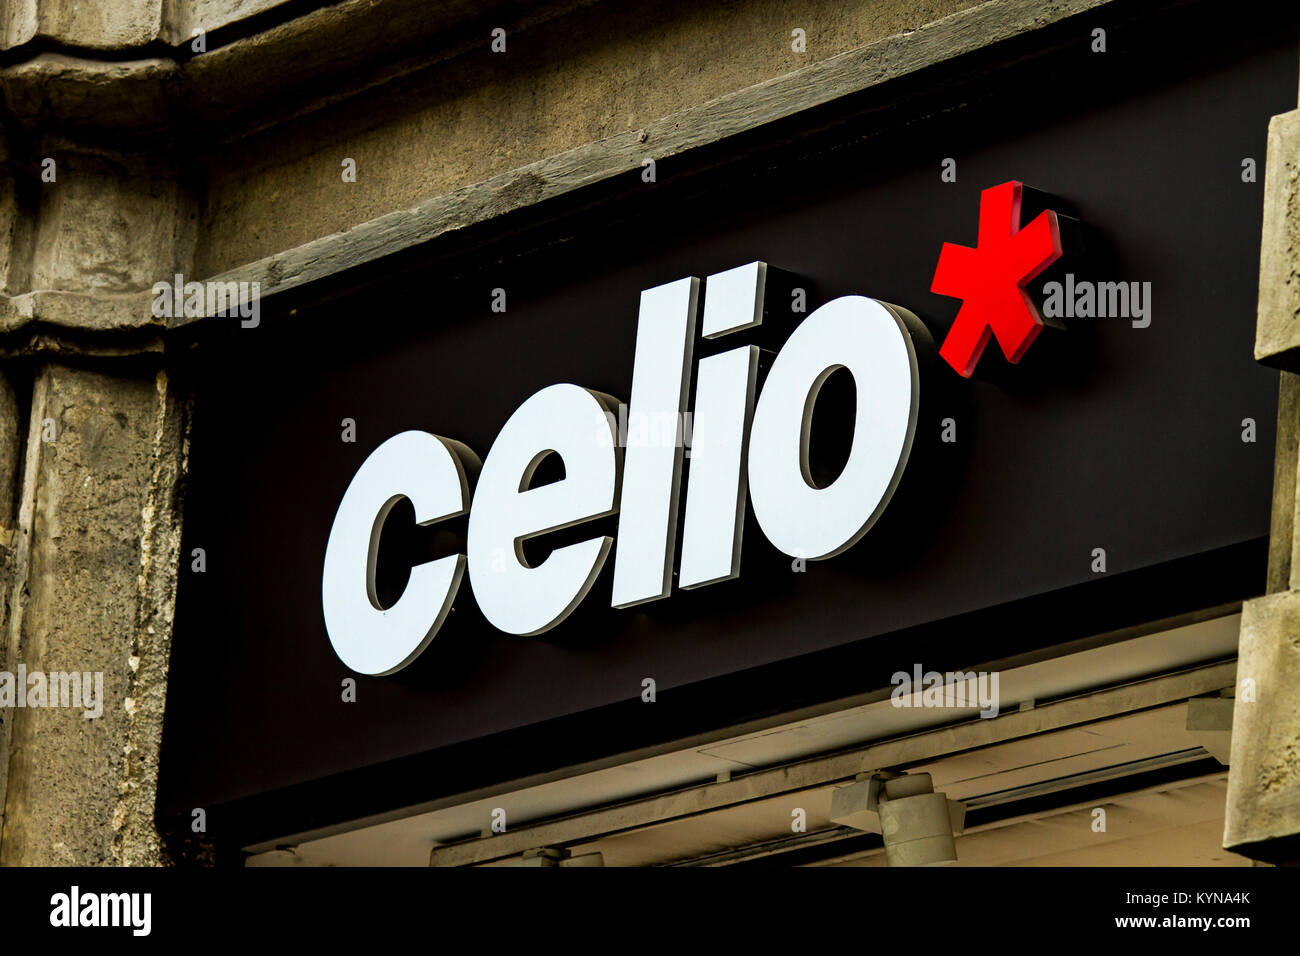 MILAN, ITALIE - 28 avril 2017 : Détail de Celio magasin à Milan, Italie.  Celio est détaillant de vêtements hommes français fondé en 1978 à Paris,  France Photo Stock - Alamy